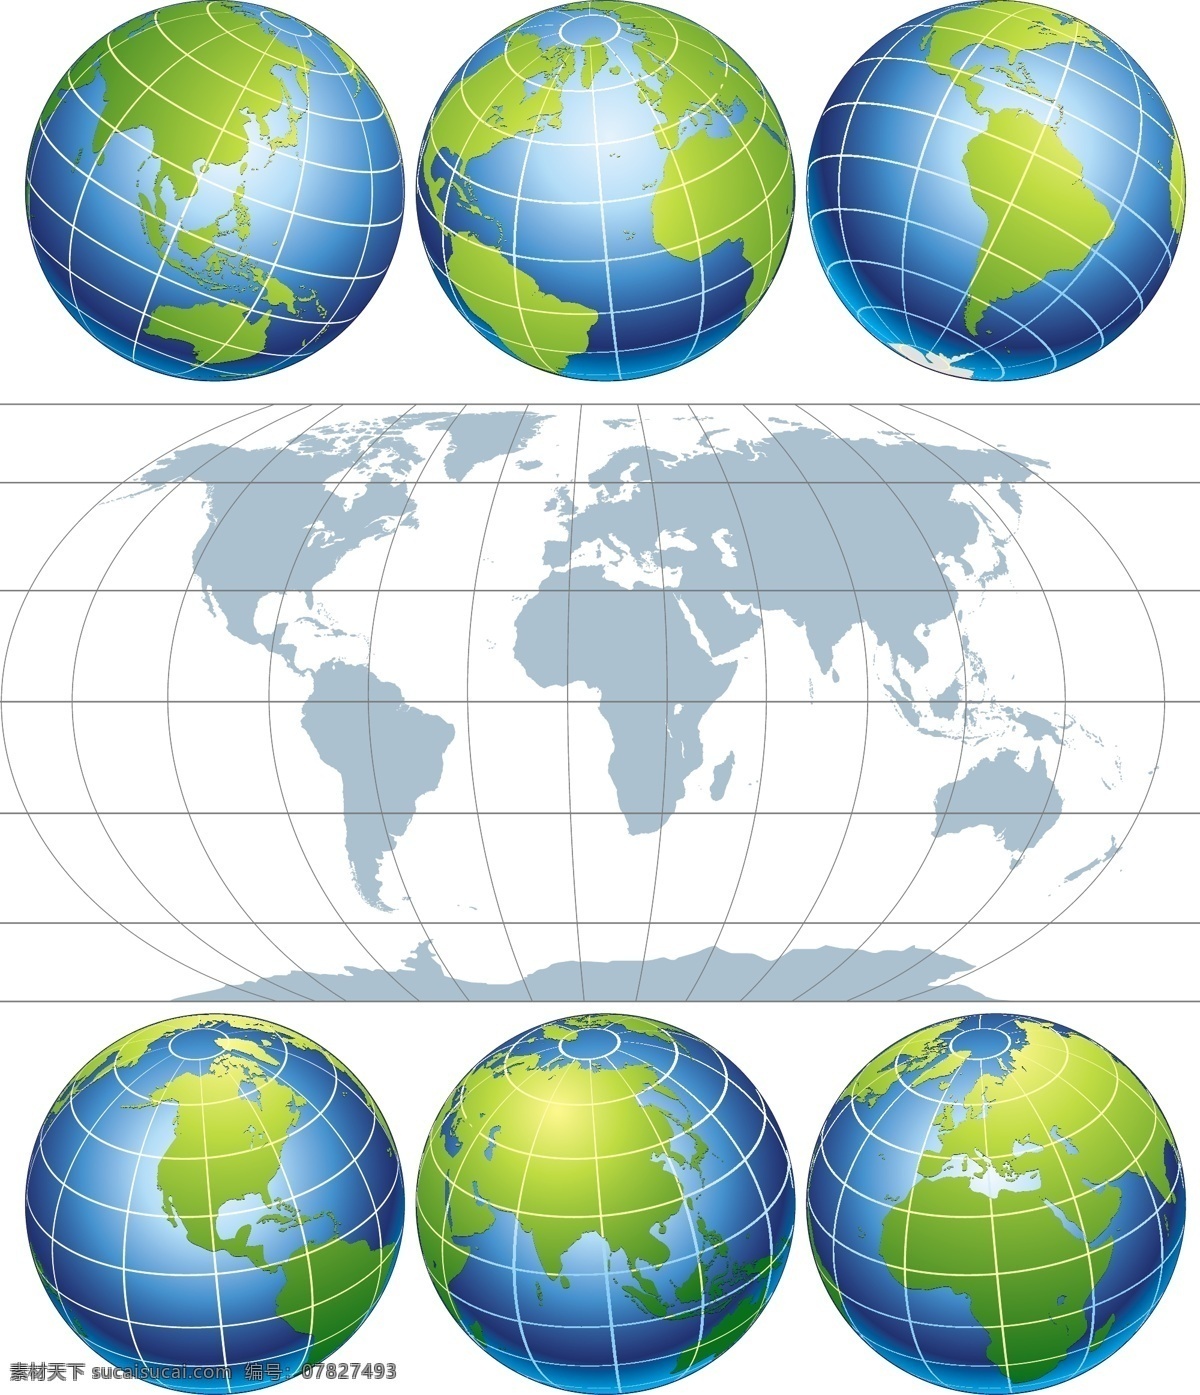 地球 主题 矢量 素材图片 环保 矢量素材 世界板块 矢量图 其他矢量图